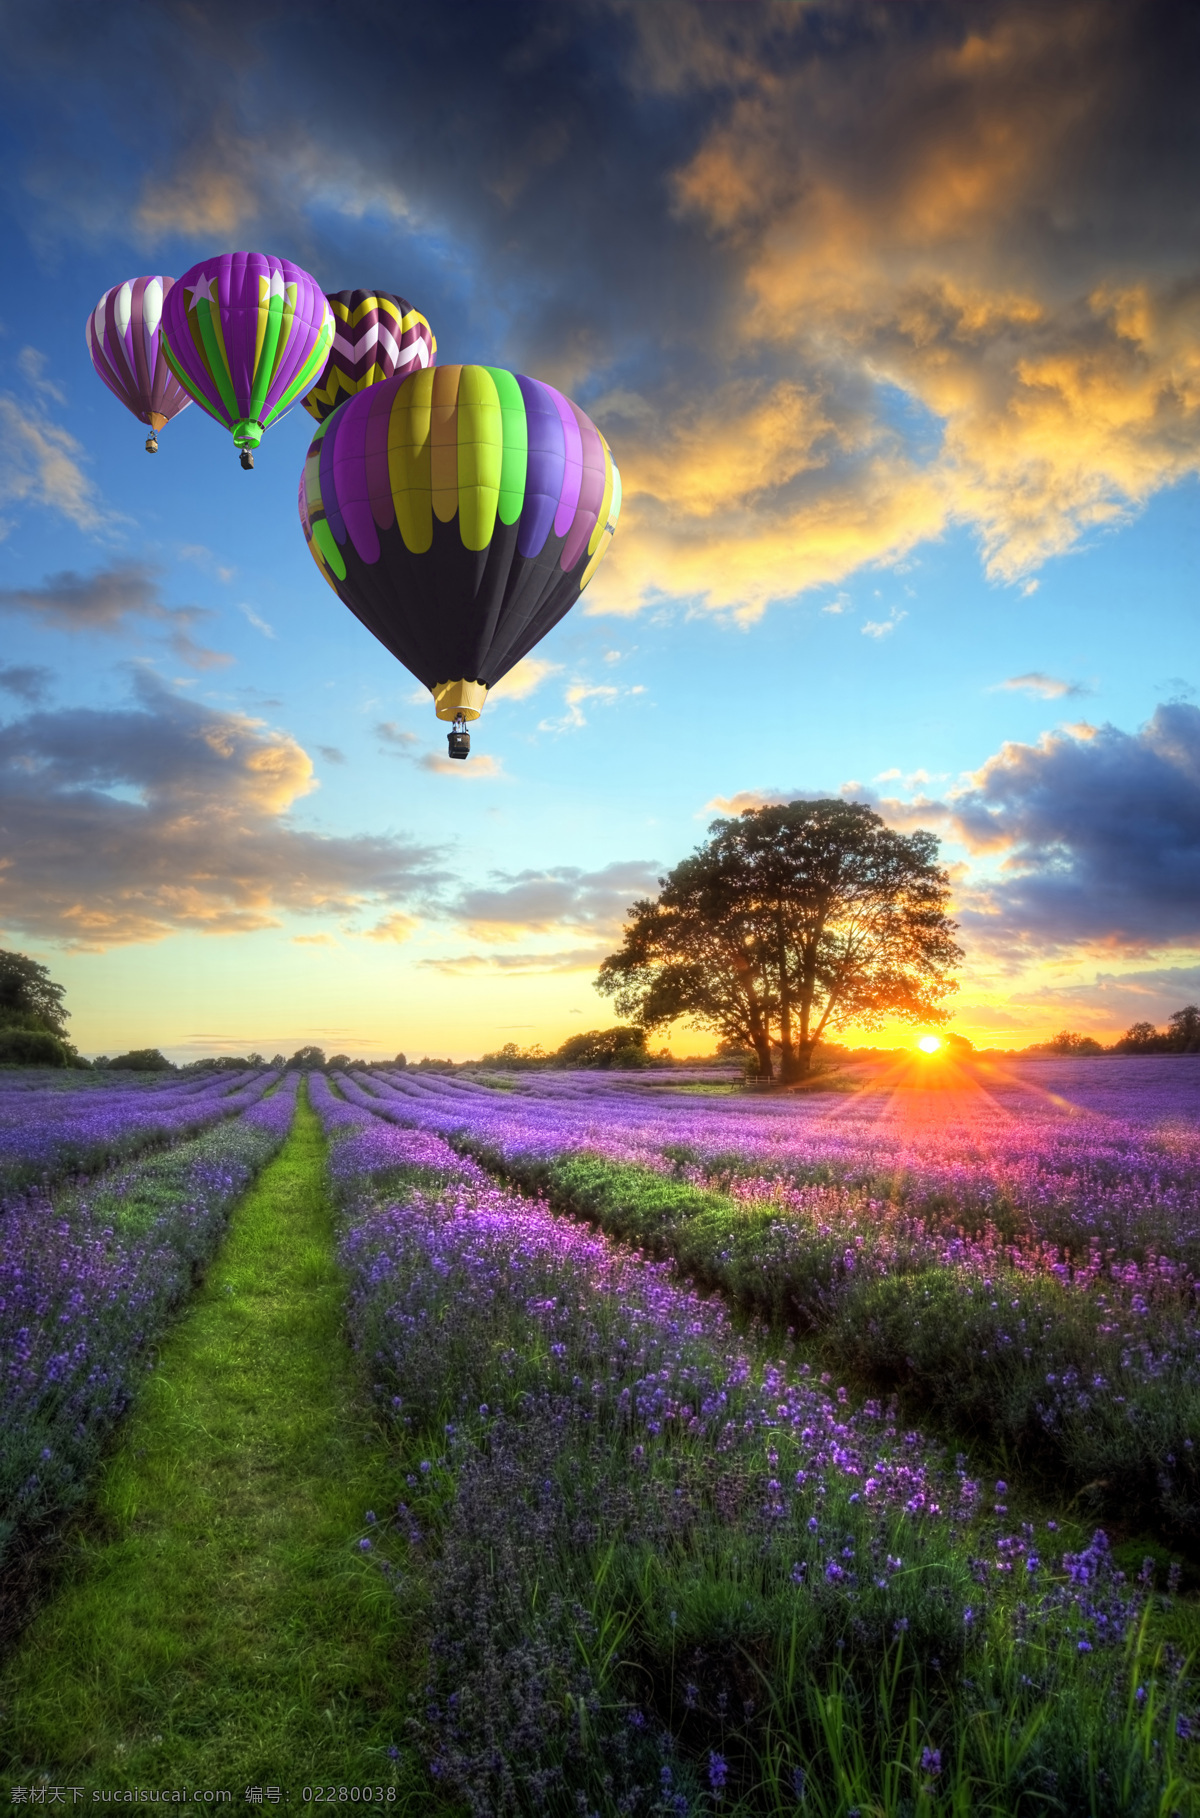 浪漫土耳其 土耳其热气球 薰衣草 蓝天 天空 夕阳 金色阳光 气球 自然景观 田园风光